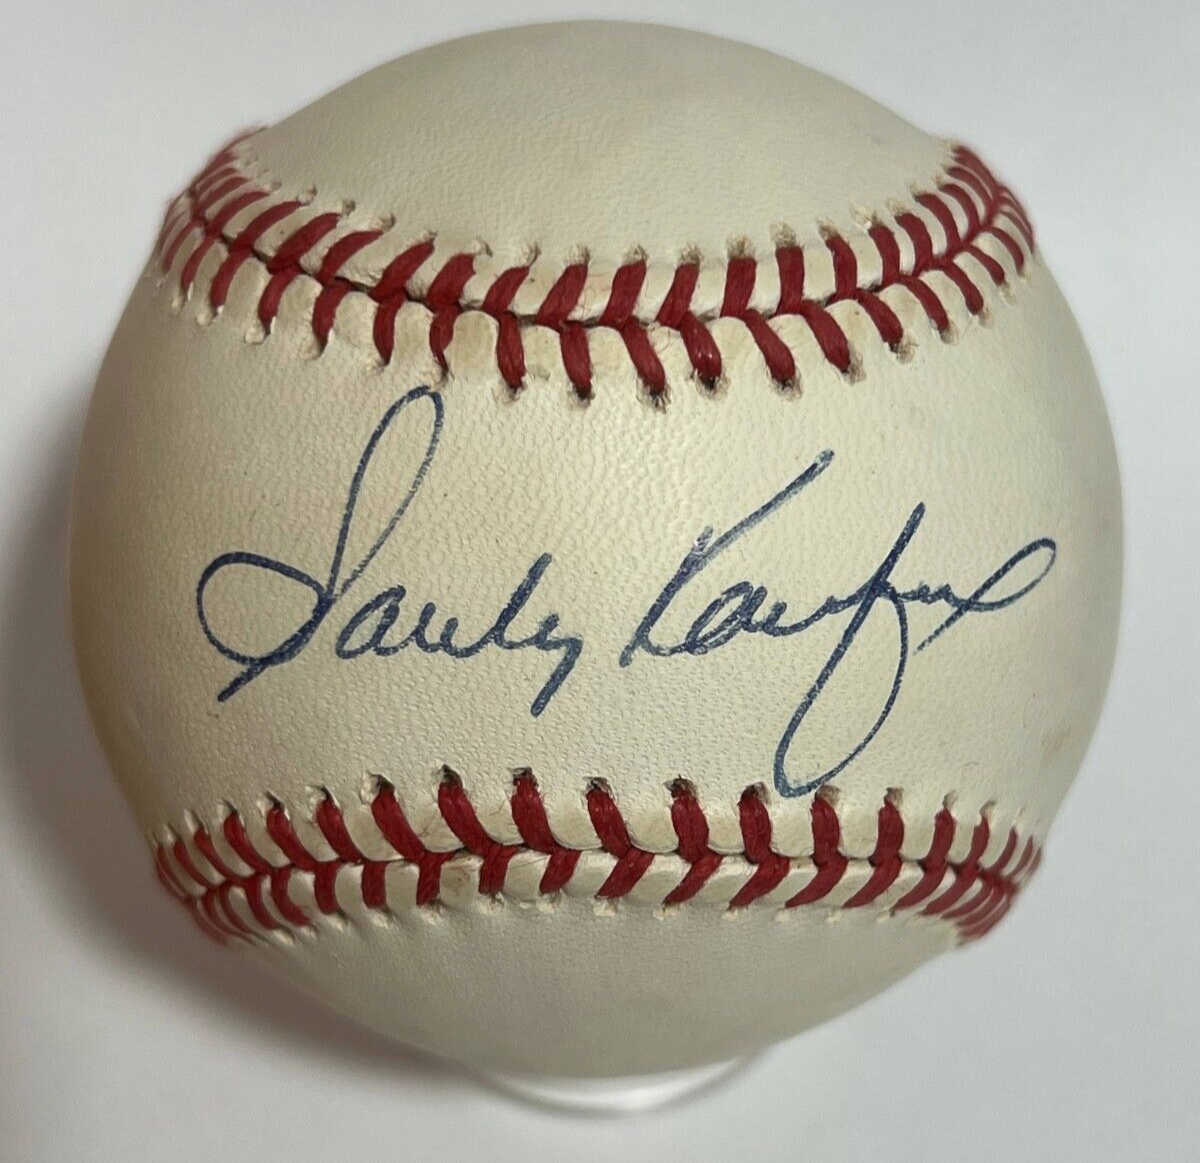 Sandy Koufax Single Signed Autograph Baseball. JSA signature